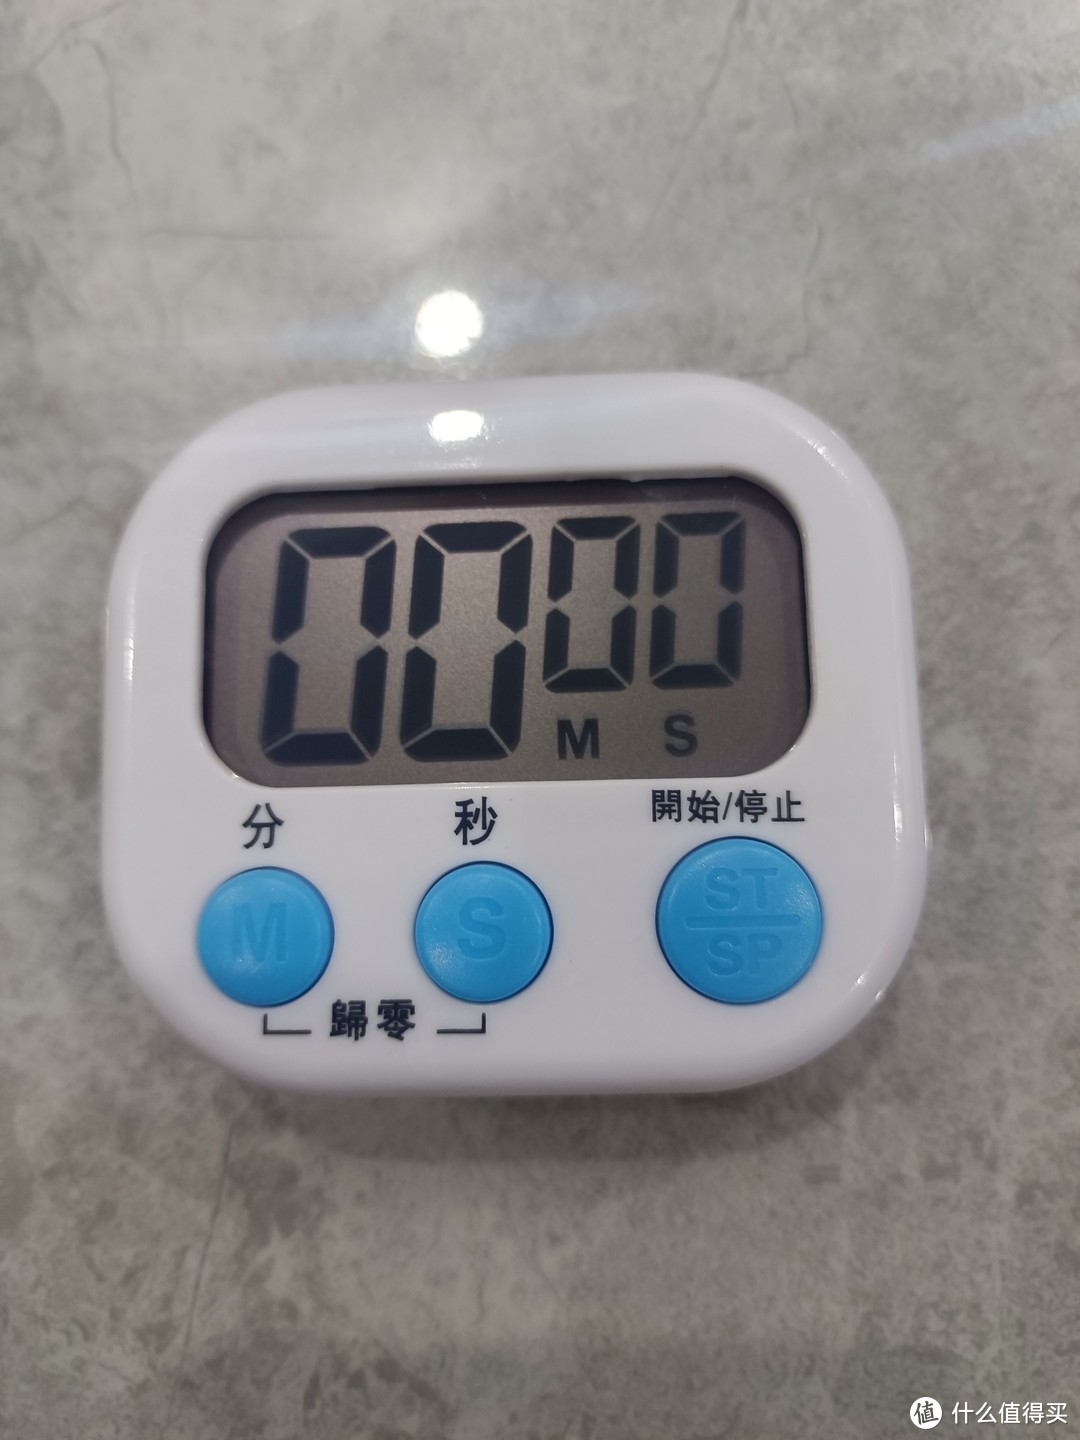 便宜又实用的迷你计时器，用途多样真划算